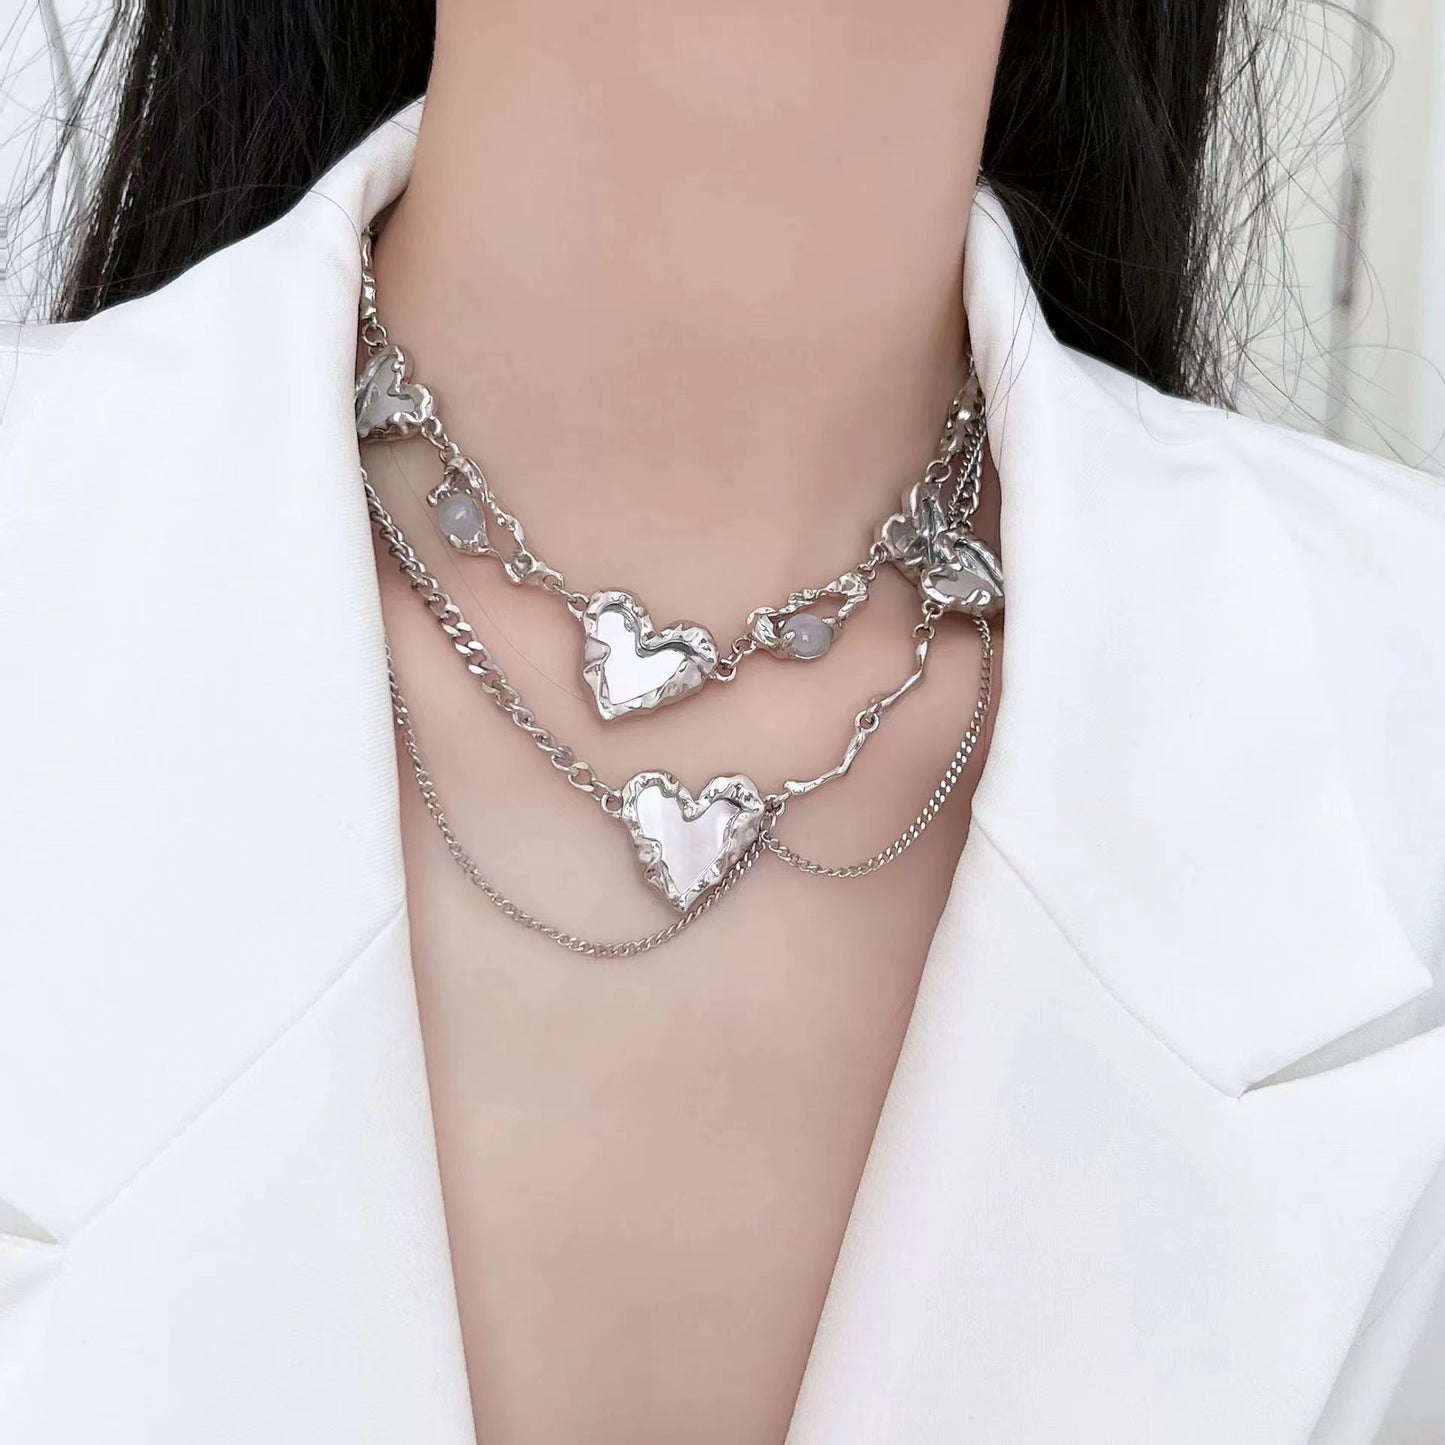 Niche design mirror love necklace